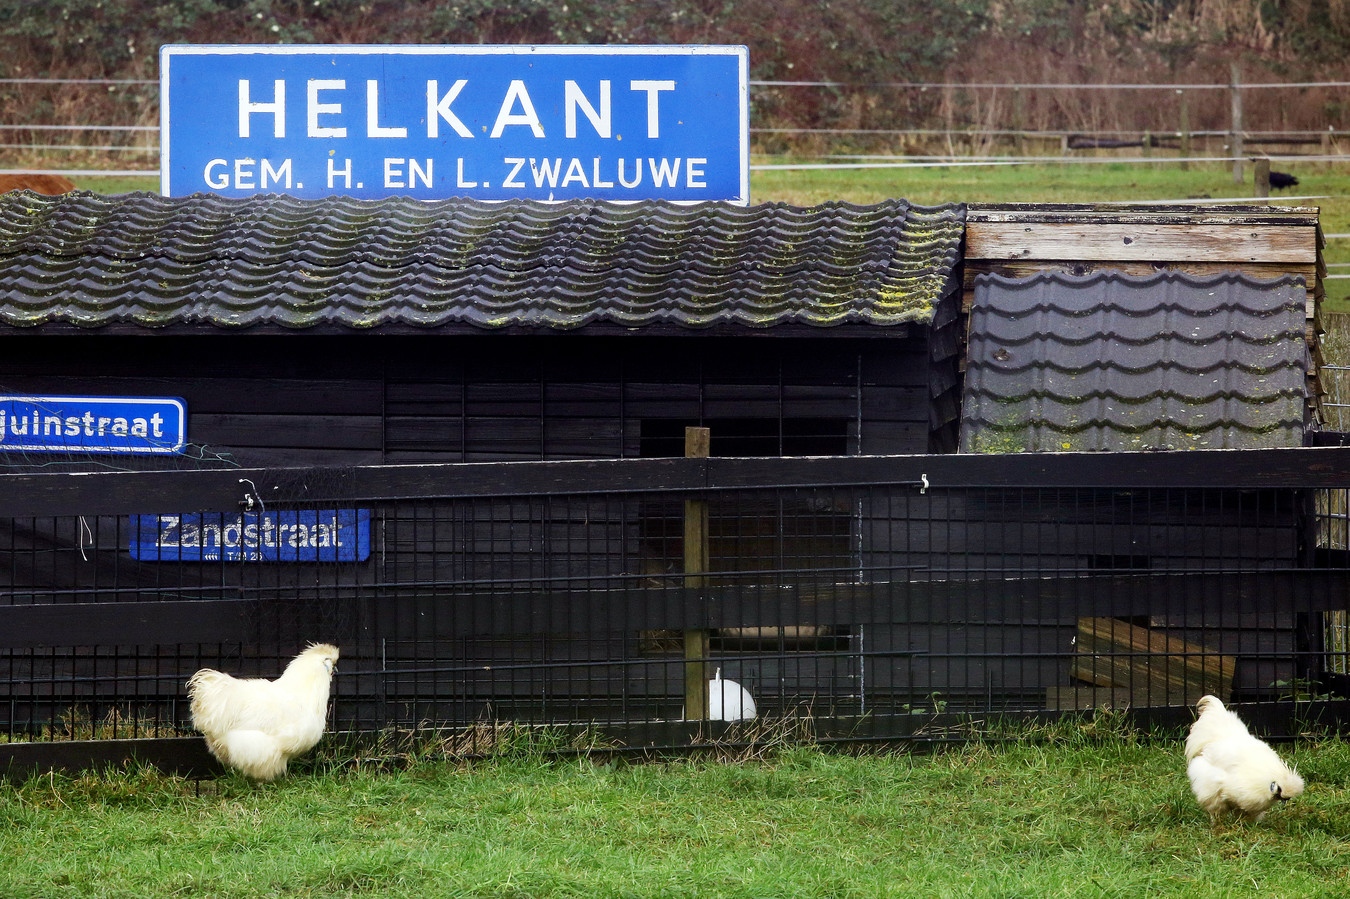 Aan de Zandstraat in het gehucht Helkant (Hooge Zwaluwe) zijn ze het verleden nog niet vergeten. Een bewoner heeft het oude plaatsnaambord van Helkant, destijds onderdeel van de door fusie verdwenen gemeente Hooge en Lage Zwaluwe, als aandenken in zijn tuin geplaatst.